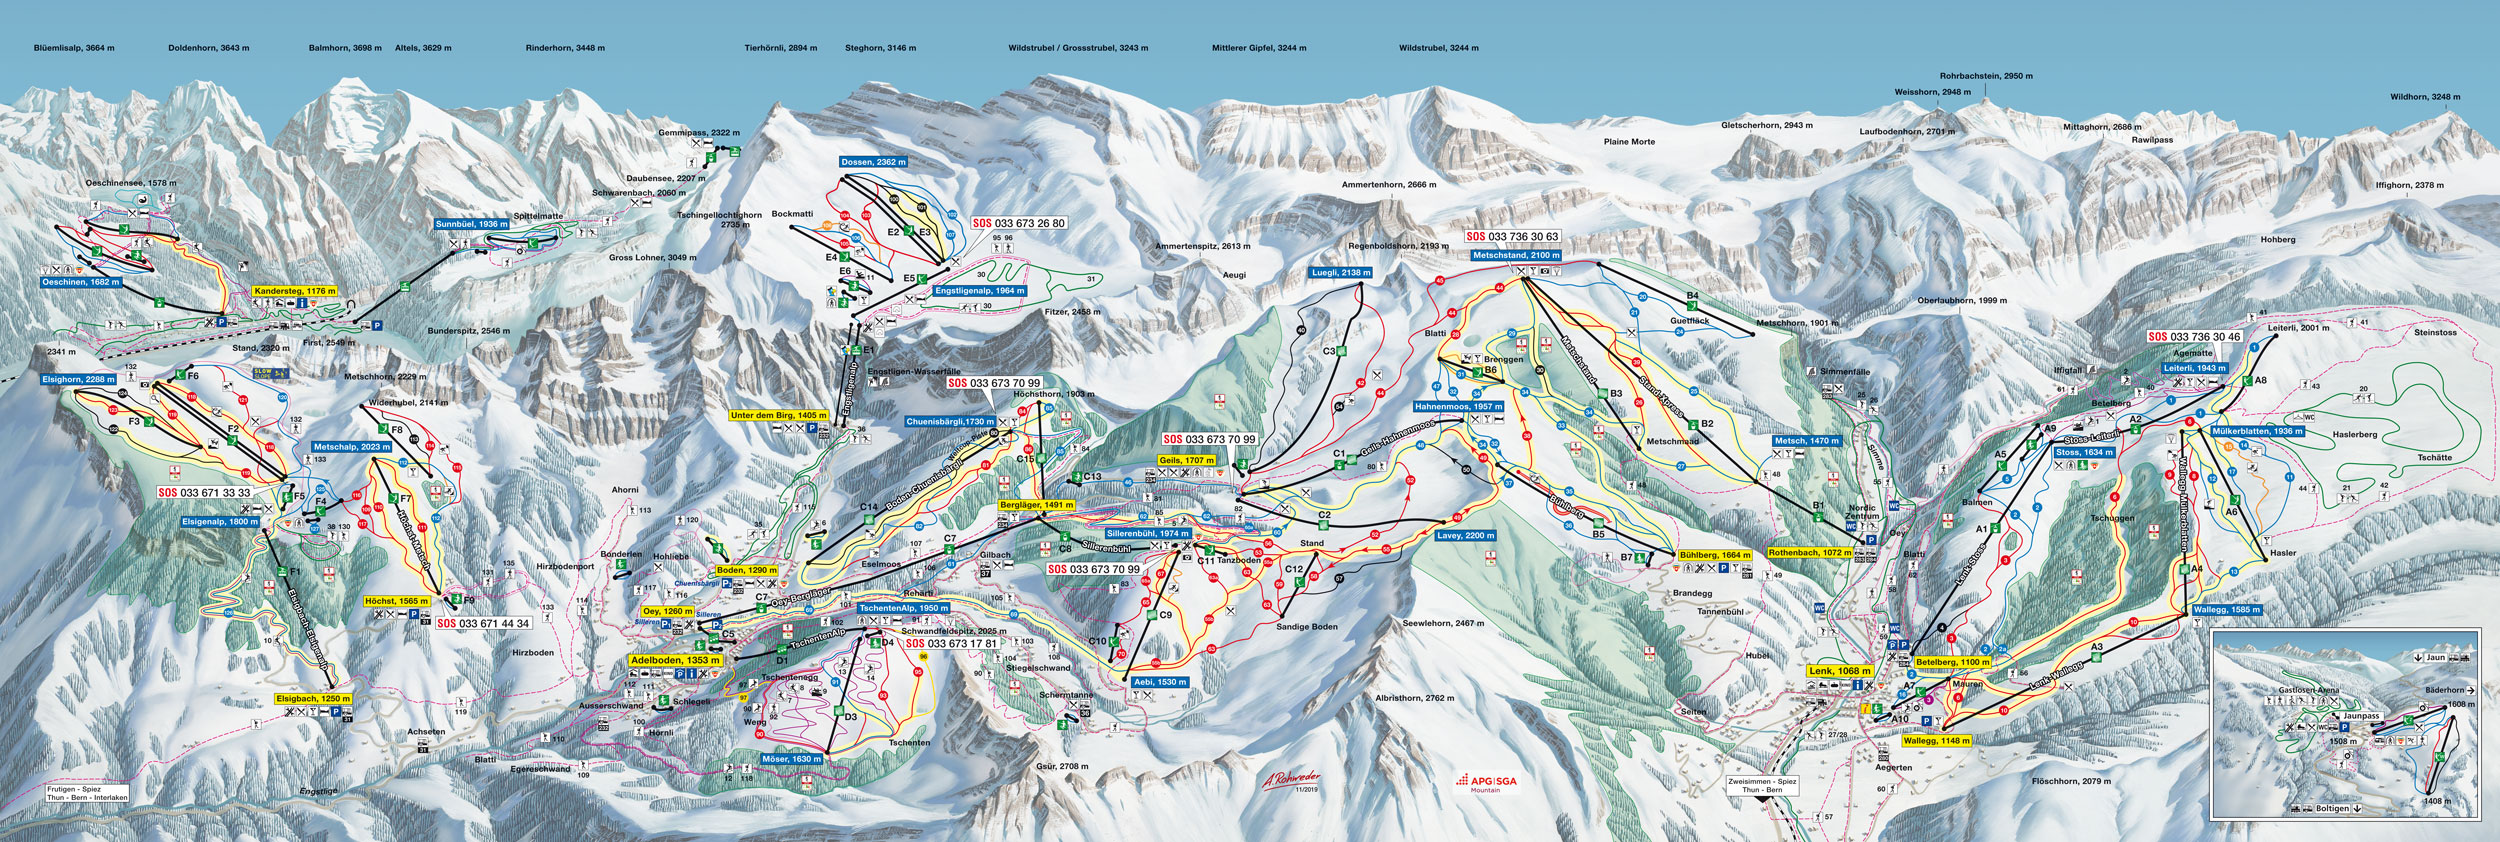 Adelboden Lenk Winter Pistenplan Ski Map